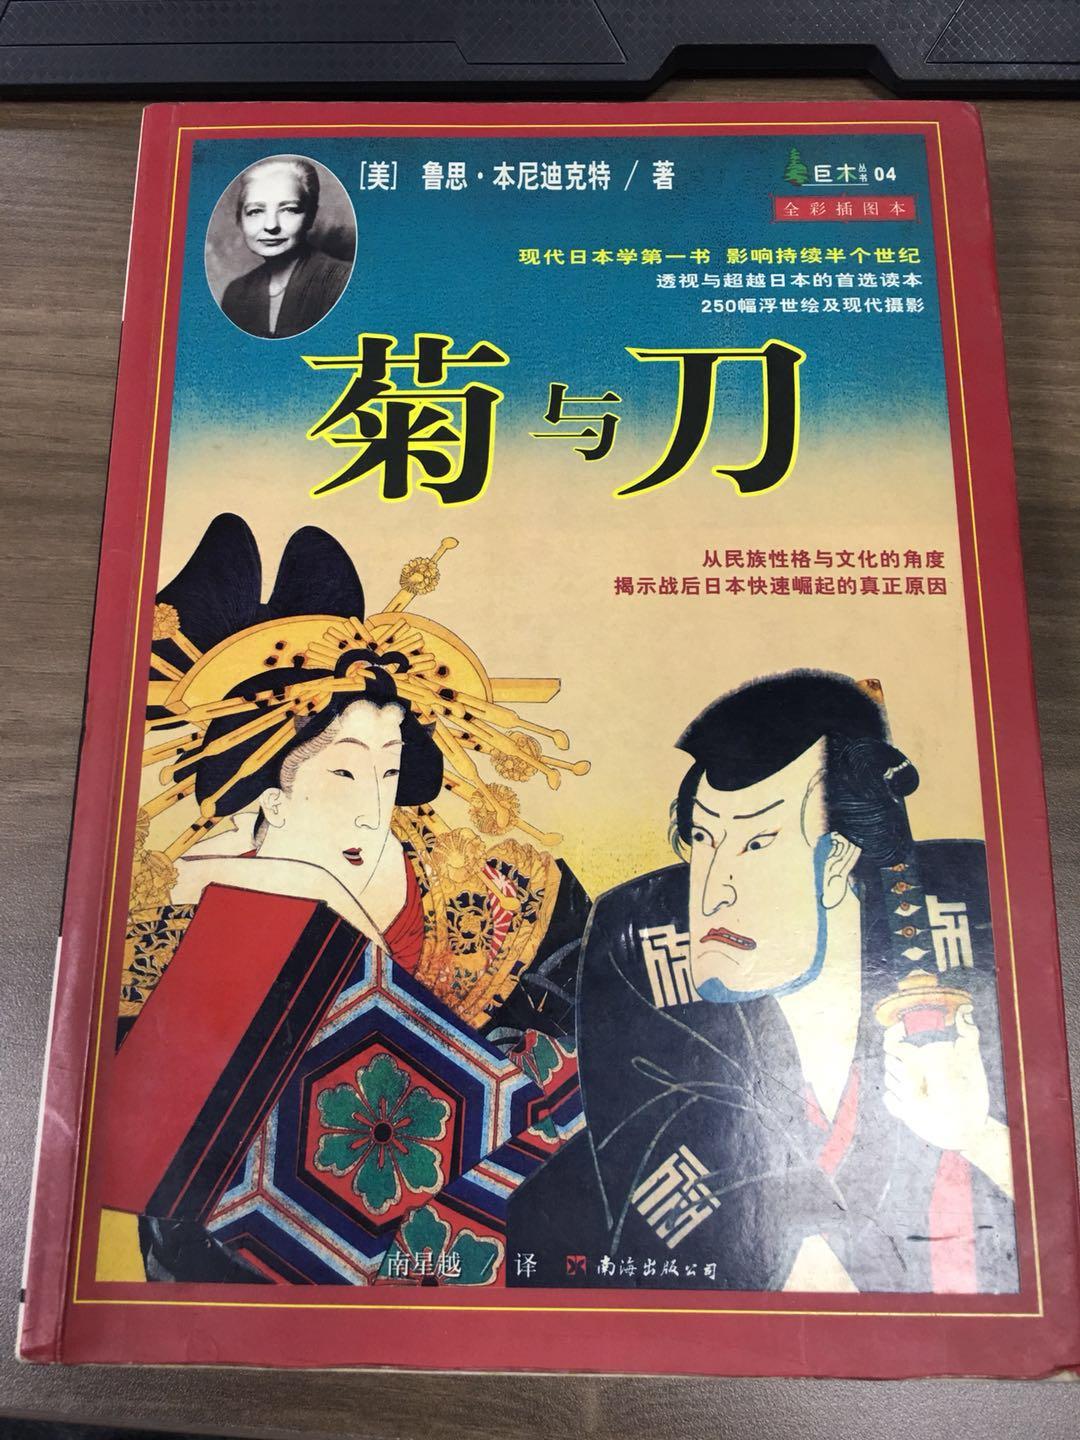 求推荐一些关于日本古代和现代人文风俗的书籍